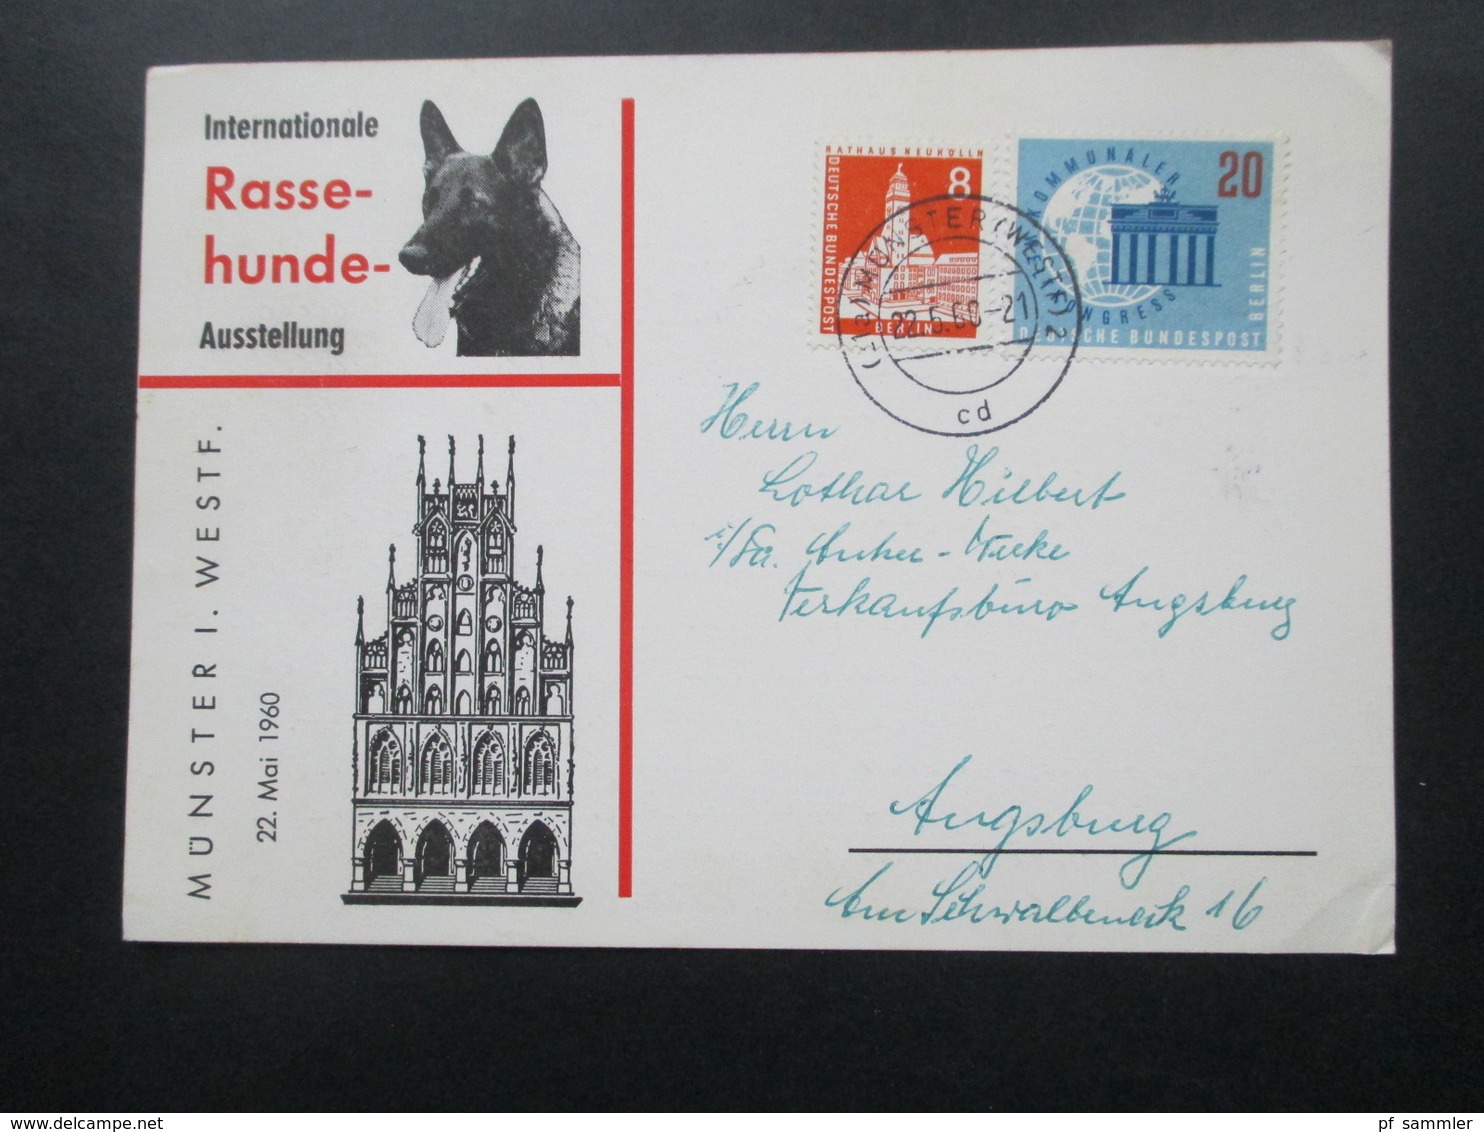 Sonderkarte Internationale Rasse Hunde Ausstellung Münster Westfalen Mit Berlin Marken! Nach Ausgburg Gesendet / Bedarf - Briefe U. Dokumente